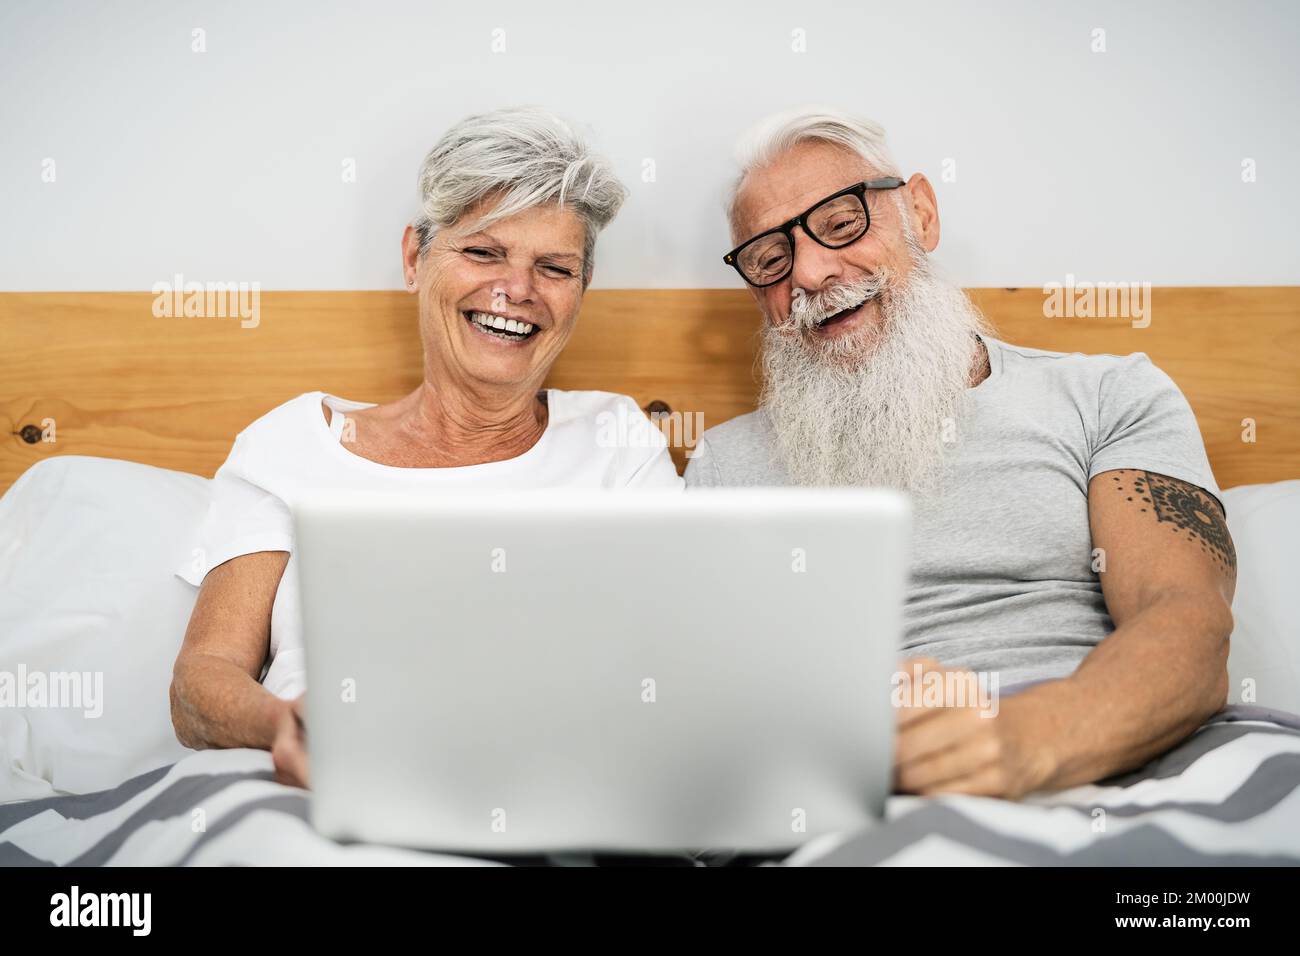 Glückliches Seniorenpaar, das Spaß mit dem Laptop hat, während es im Bett unter Decken liegt - Technologie und Lifestyle-Konzept für ältere Menschen Stockfoto